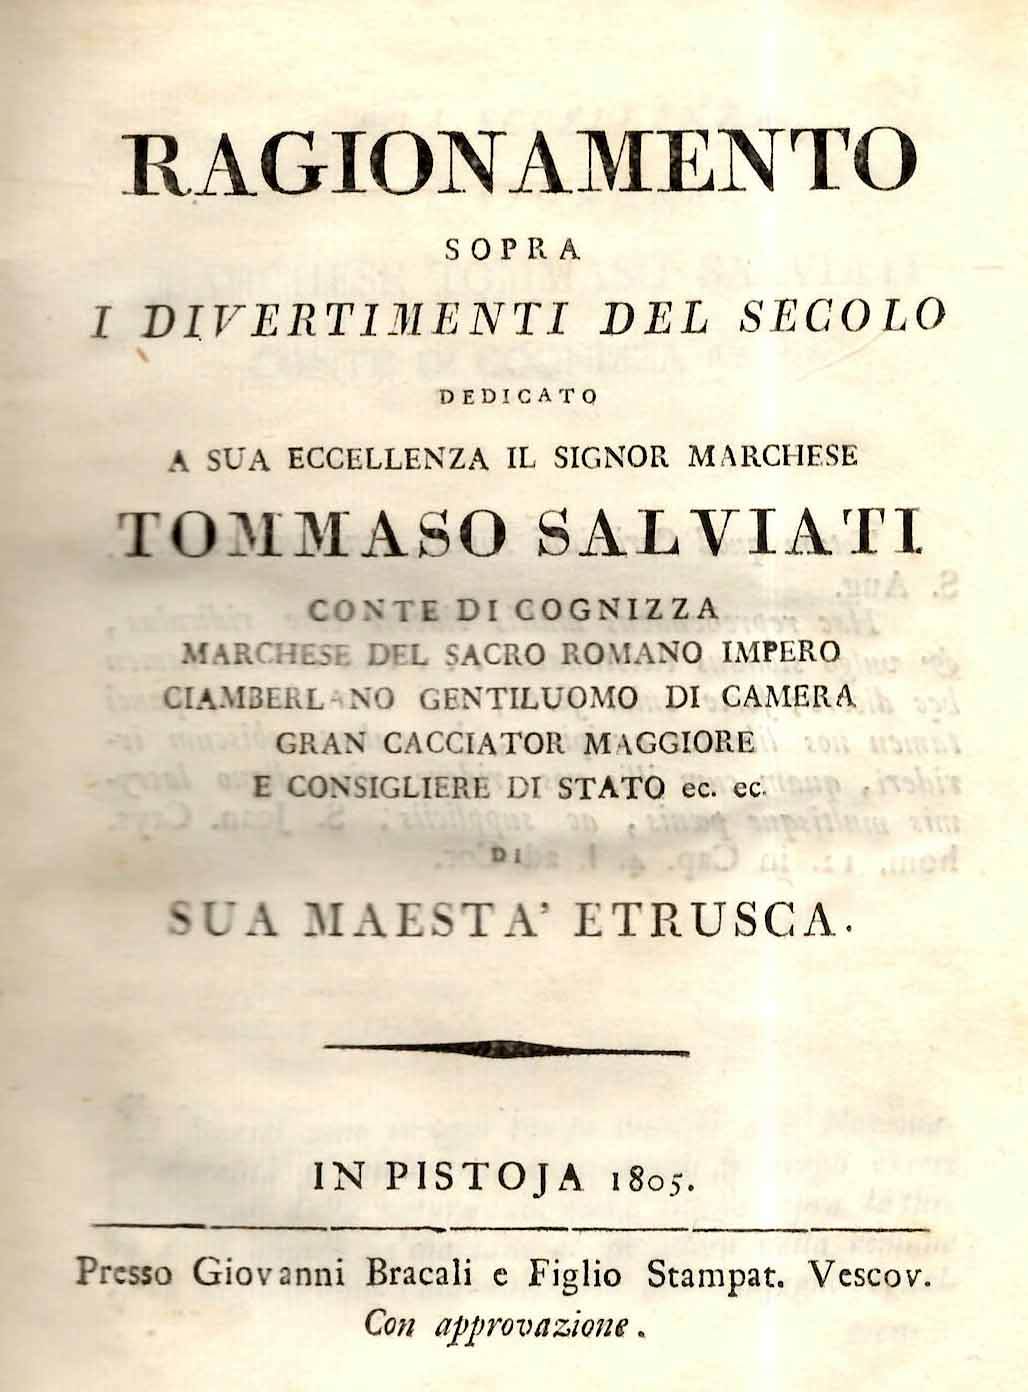 Ragionamento sopra i divertimenti del secolo dedicato a sua eccellenza il Signor Marchese Tommaso Salviati